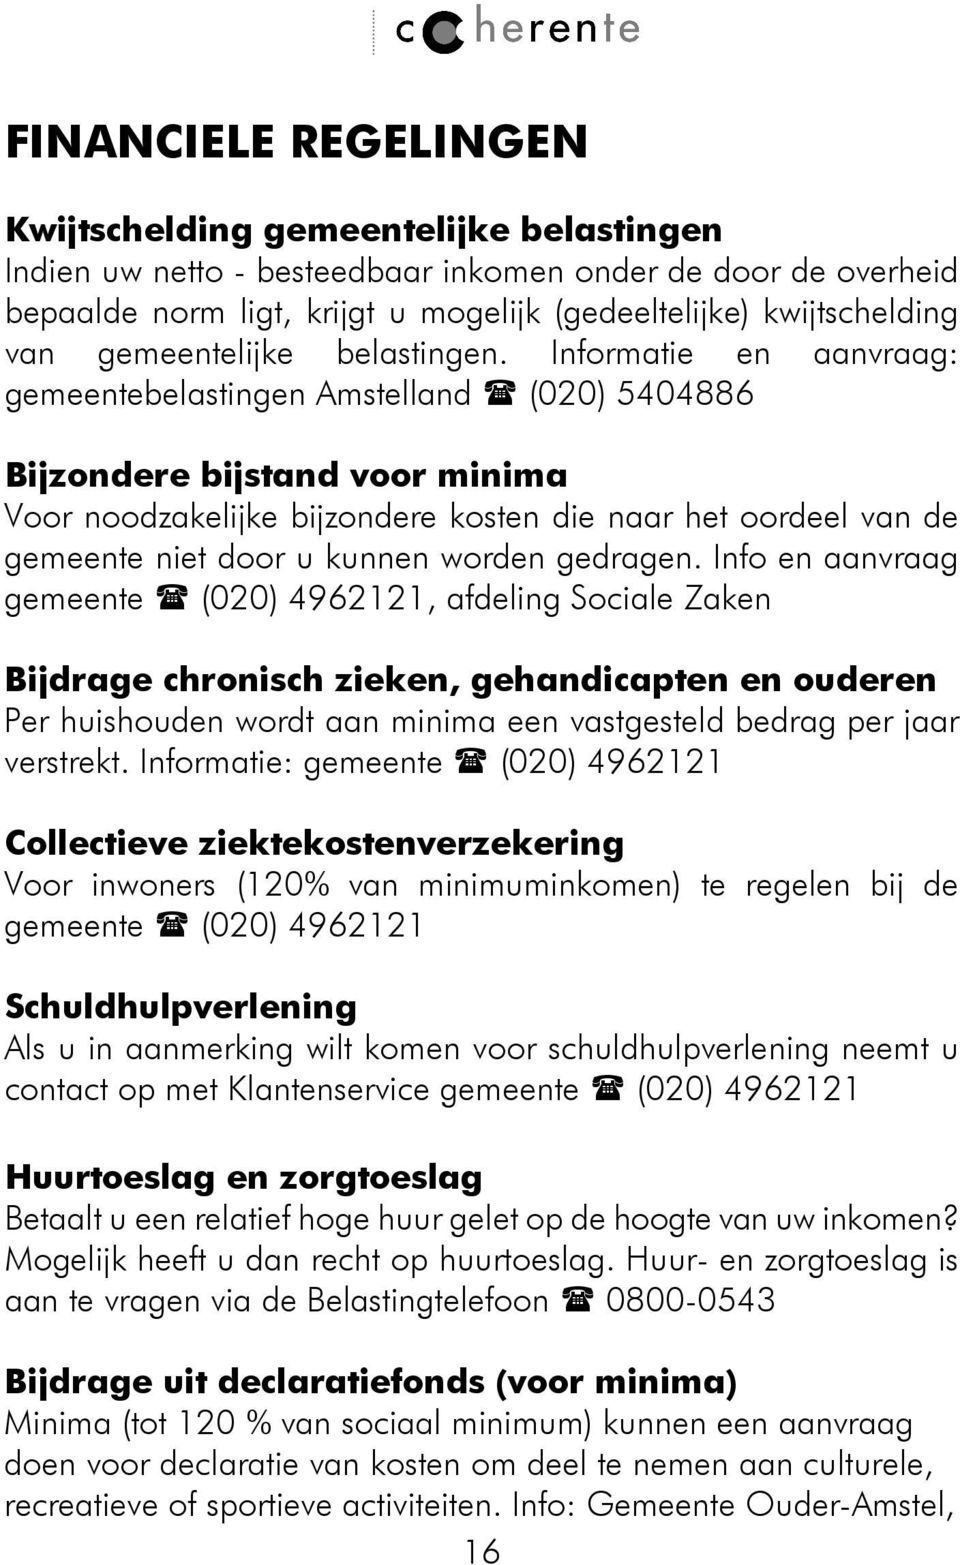 Informatie en aanvraag: gemeentebelastingen Amstelland (020) 5404886 Bijzondere bijstand voor minima Voor noodzakelijke bijzondere kosten die naar het oordeel van de gemeente niet door u kunnen